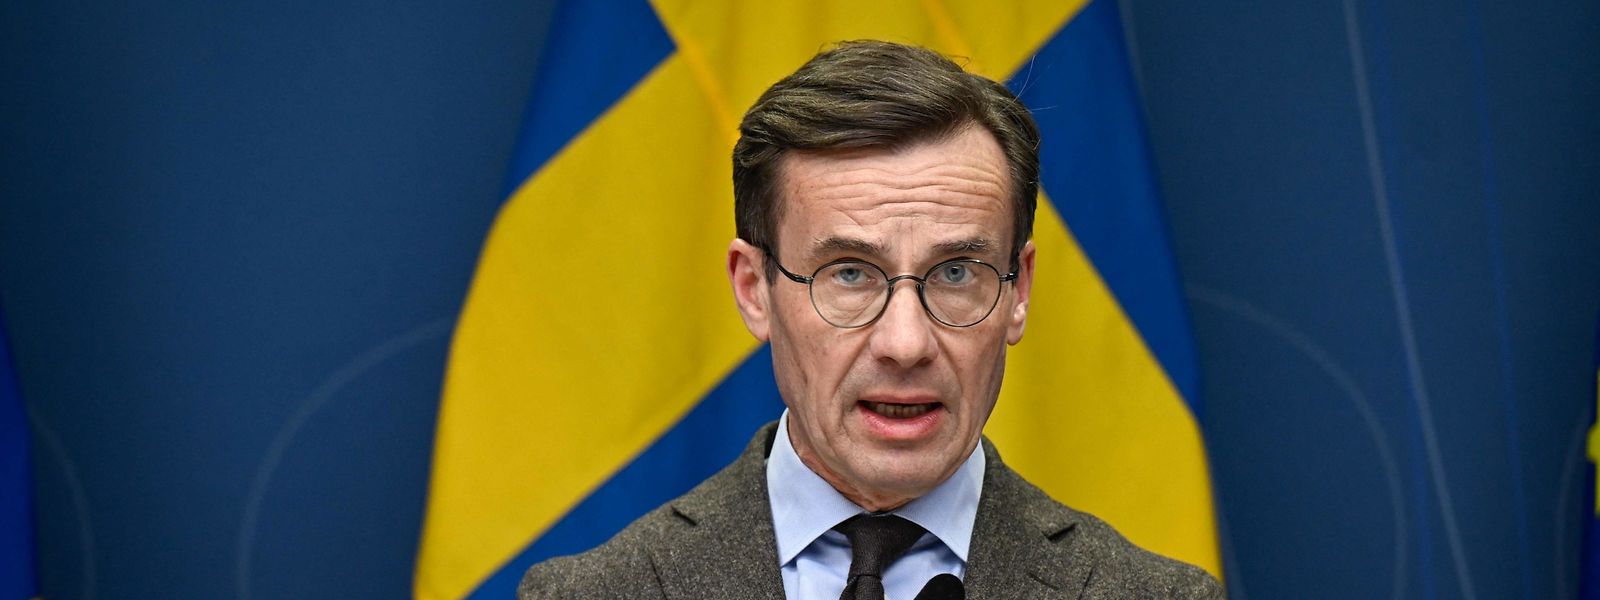 O primeiro-ministro da Suécia, Ulf Kristersson, contratou um assessor que pescou ilegalmente enguias em vias de extinção no Mar Báltico.